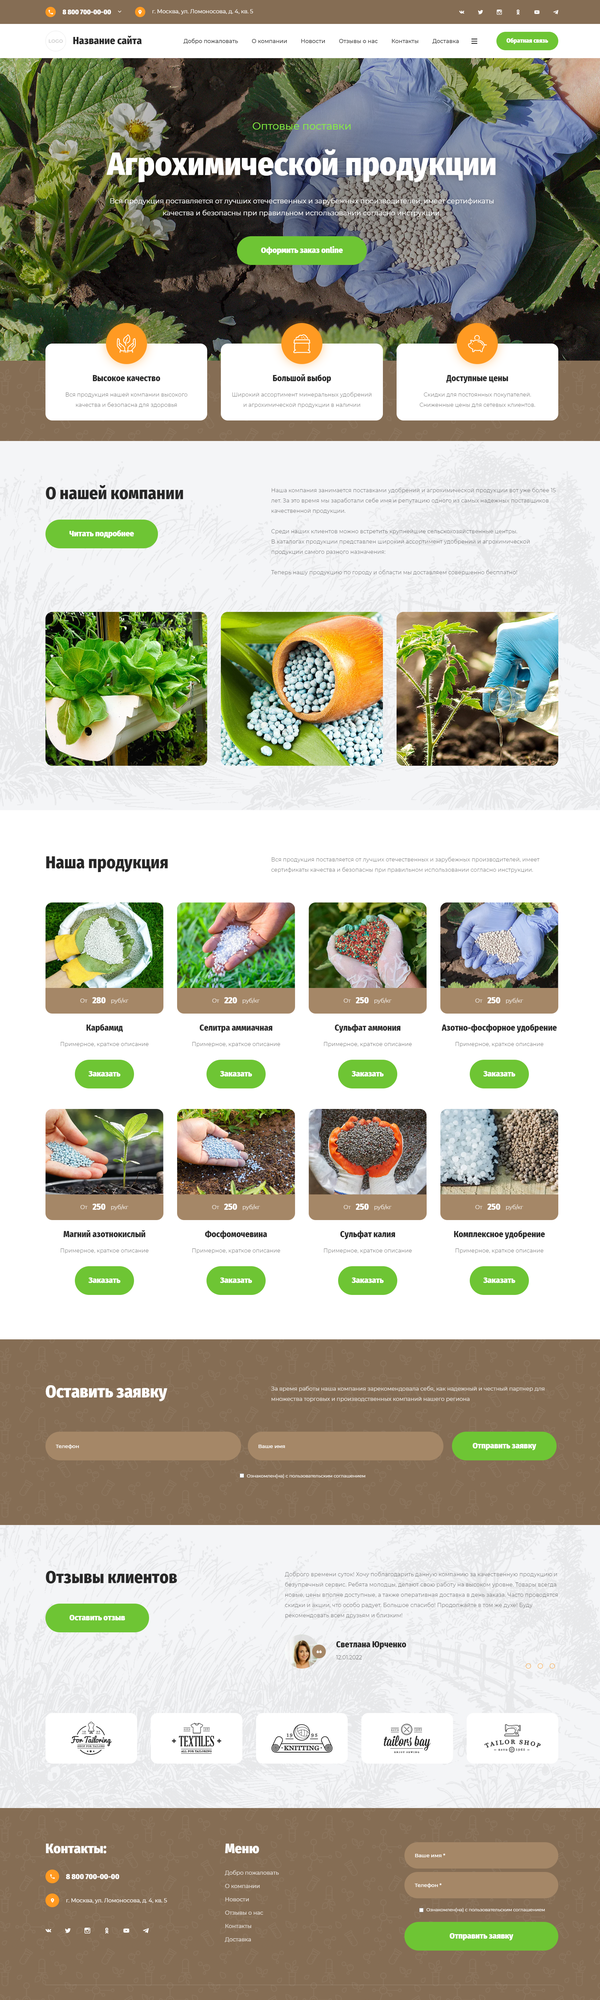 Готовый Сайт-Бизнес № 3793051 - Удобрения и агрохимические продукты (Десктопная версия)